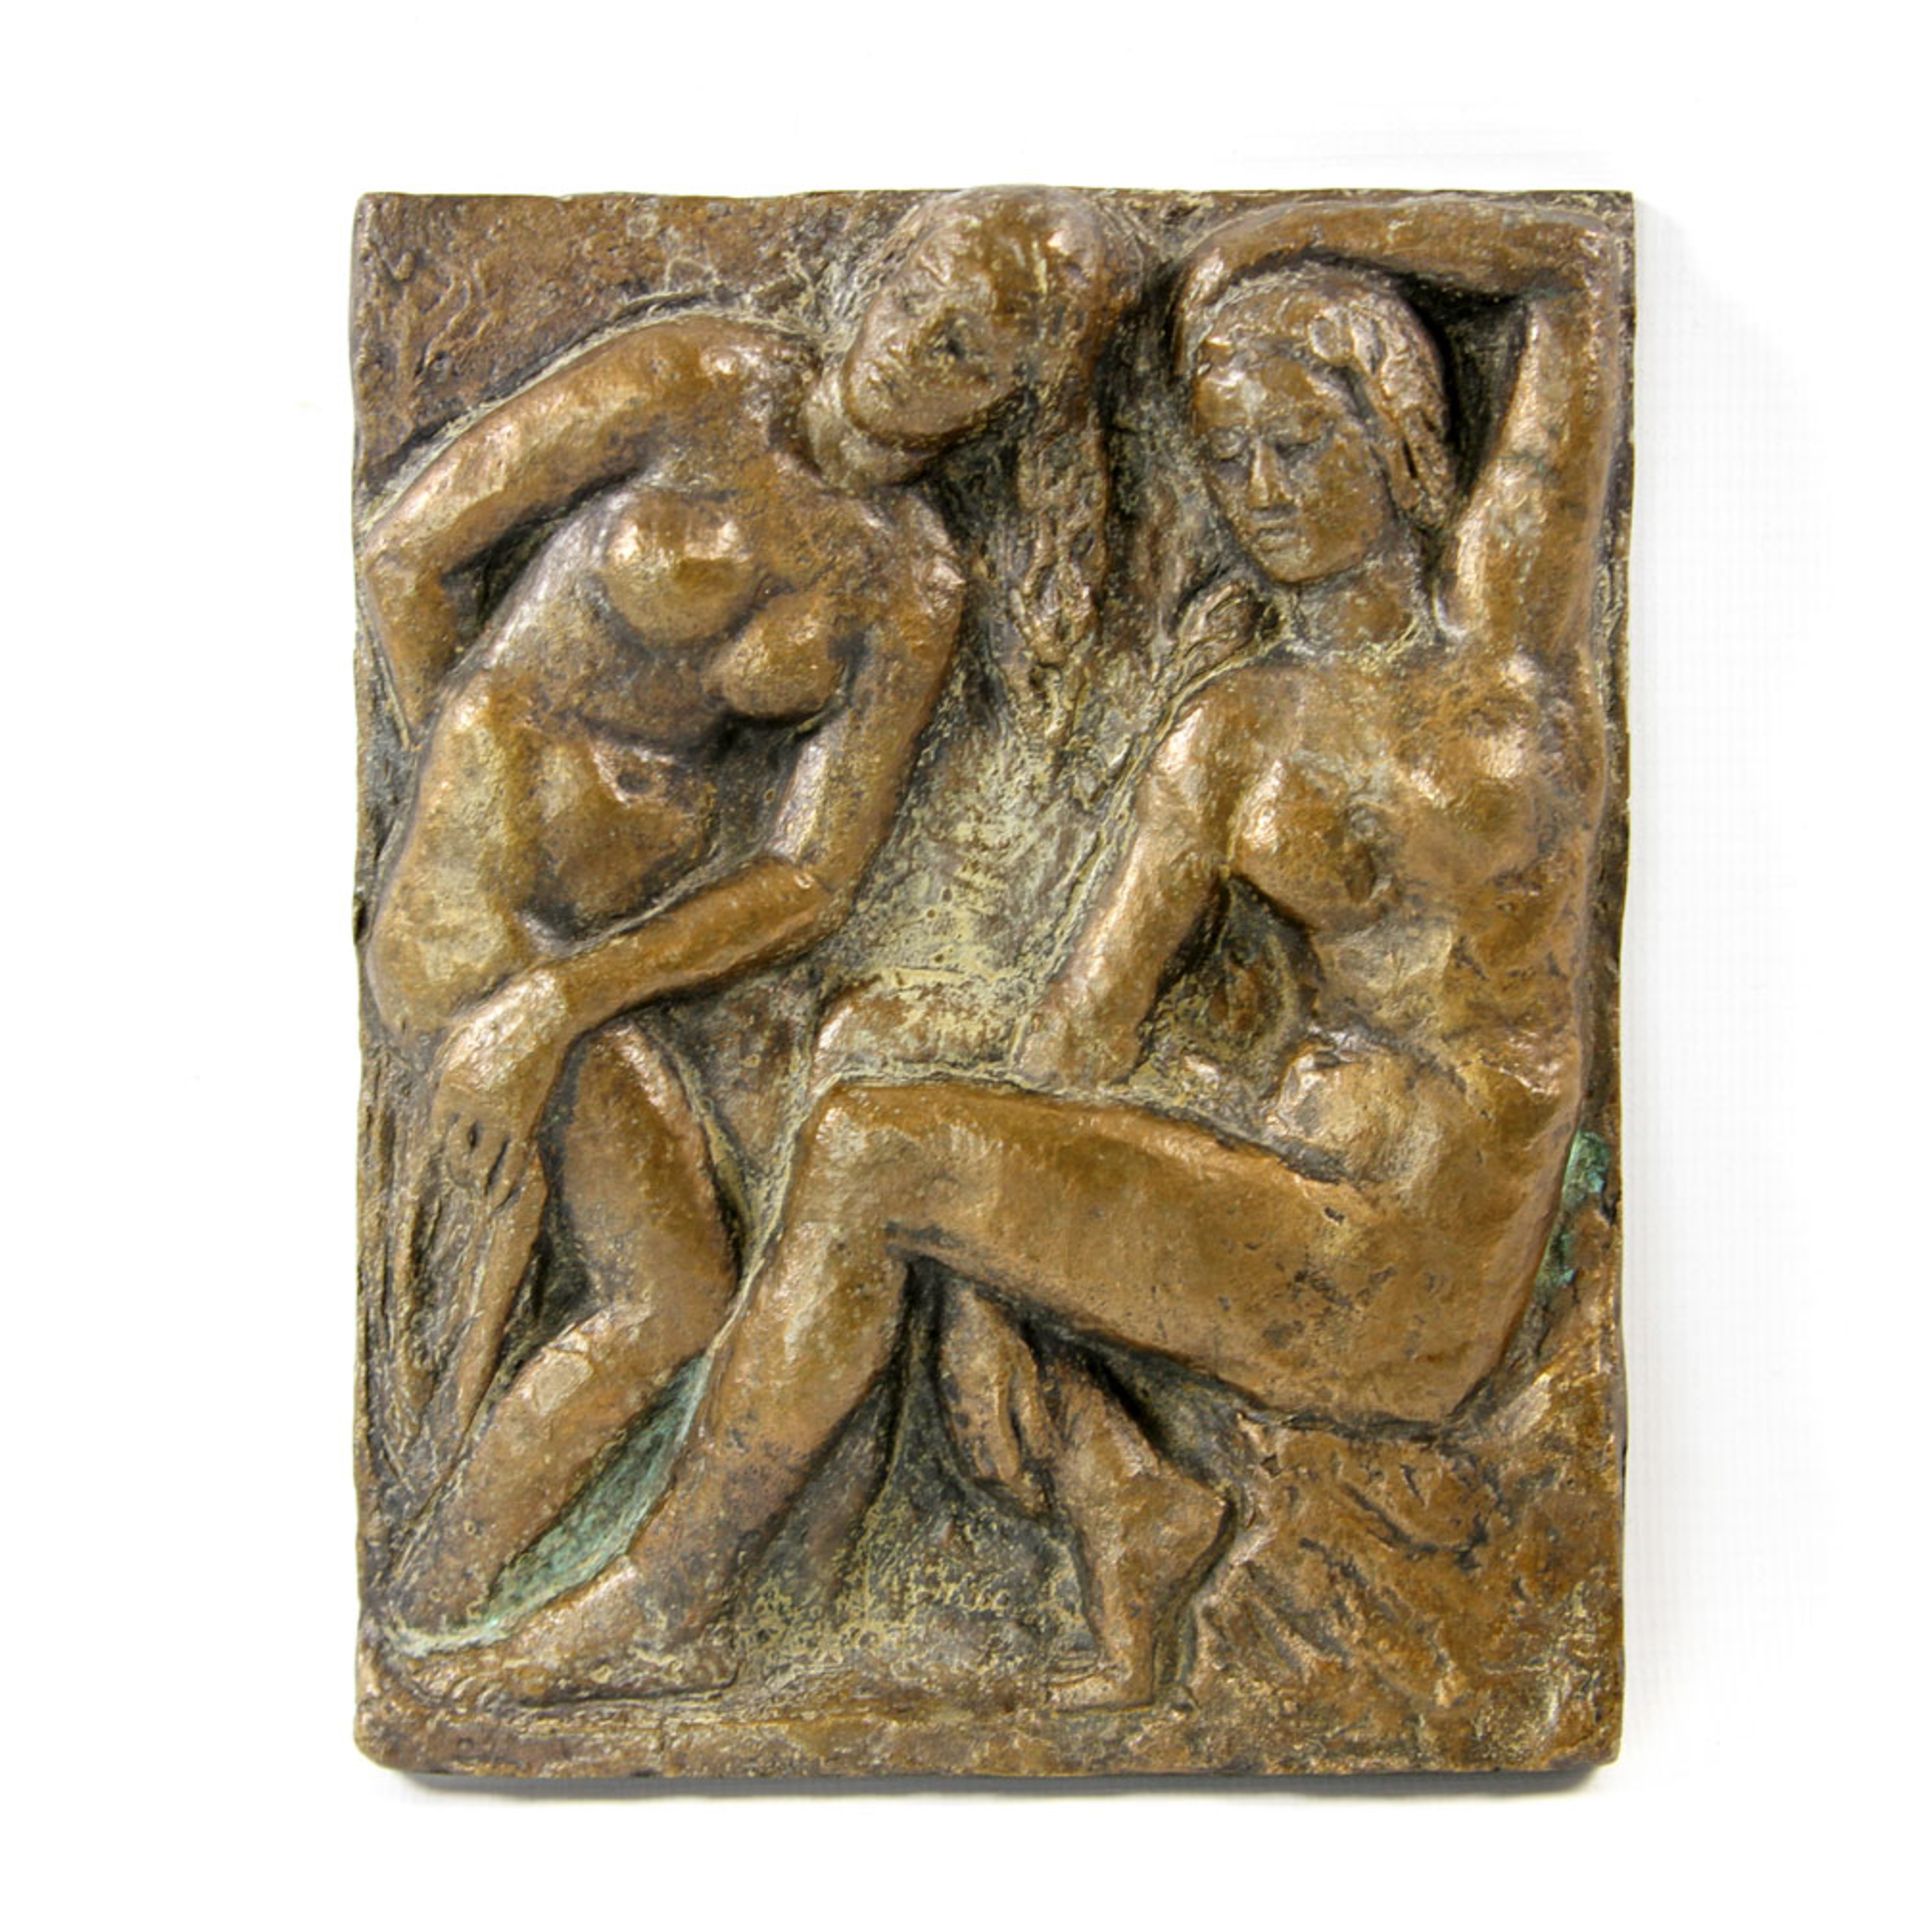 ANONYMER KÜNSTLER, ca. 1930er Jahre: Bronzerelief "Zwei Badende". Bronze, patiniert, rücks. Reste e.